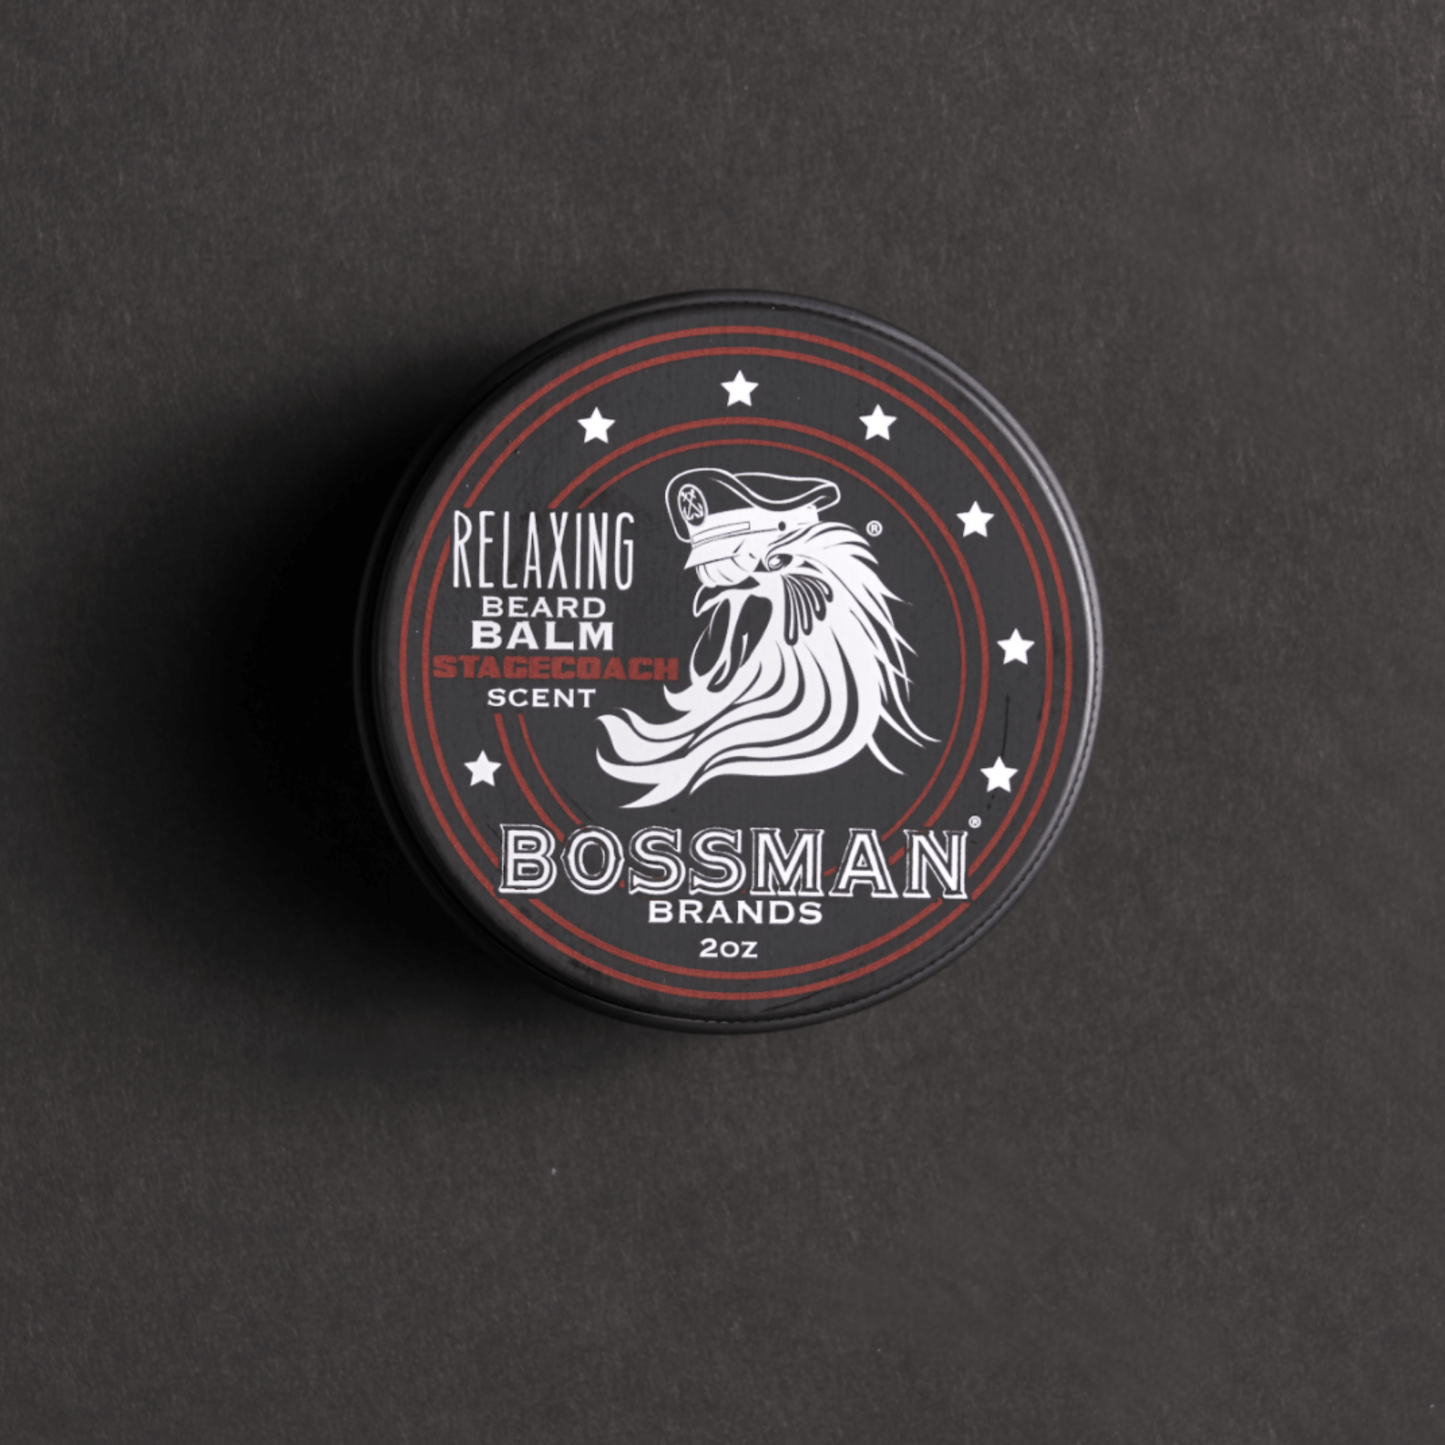 Bossman Beard Balm Stagecoach 56g